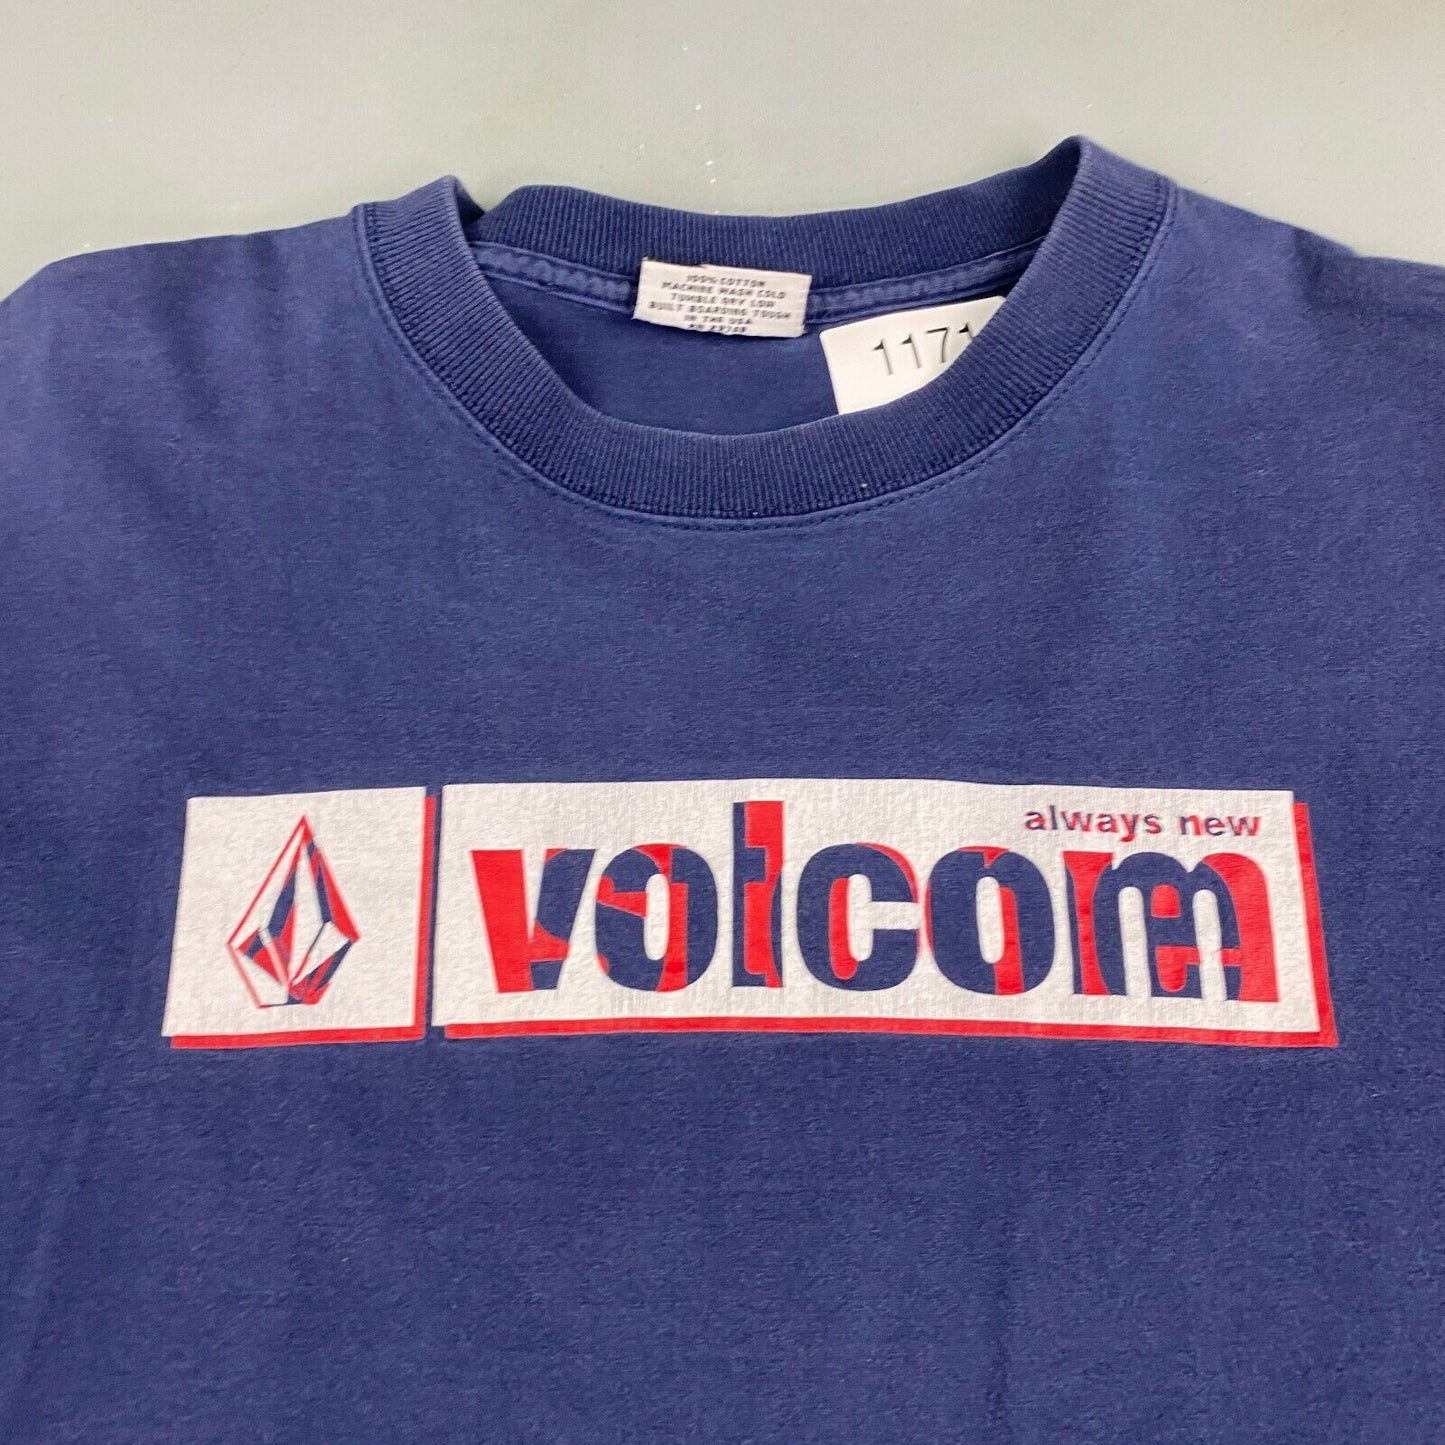 VINTAGE Volcom Surf Skate Boarding Navy T-Shirt sz Medium Adult